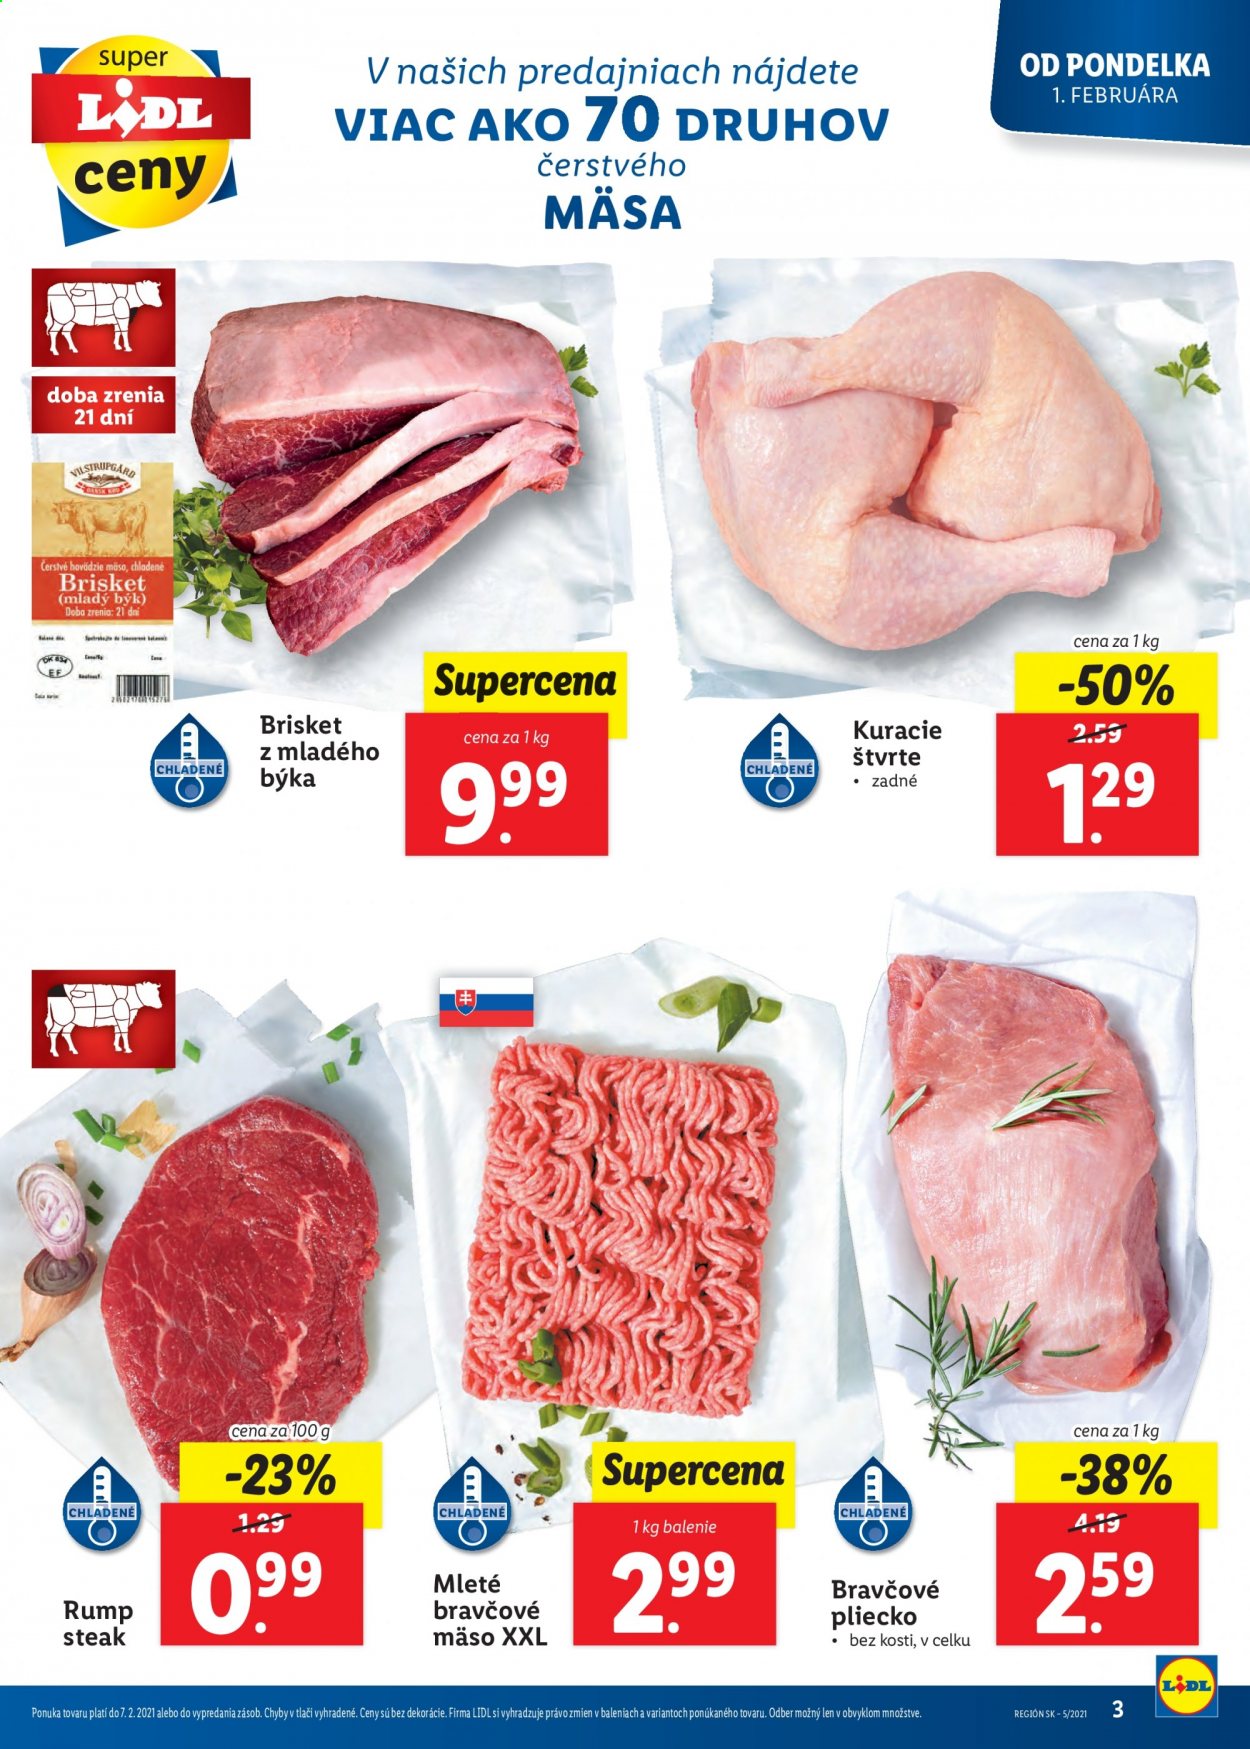 thumbnail - Leták Lidl - 1.2.2021 - 7.2.2021 - Produkty v akcii - kuracie mäso, kuracie štvrte, mleté mäso, rump steak, mleté bravčové mäso, bravčové pliecko. Strana 3.